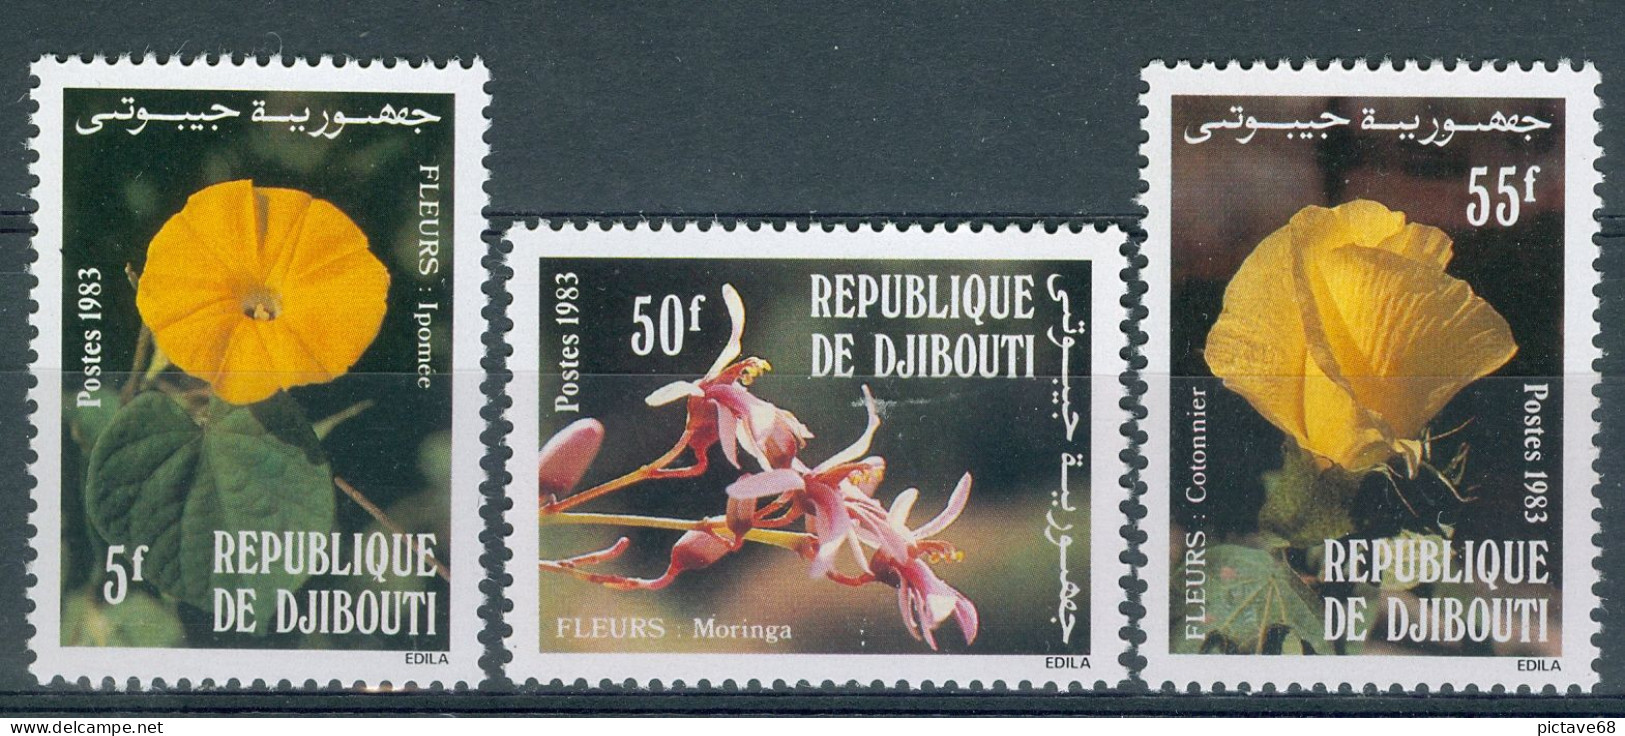 REPUBLIQUE DE DJIBOUTI/ FLORE/ SERIE N° 564 à 566 NEUFS ** - Djibouti (1977-...)